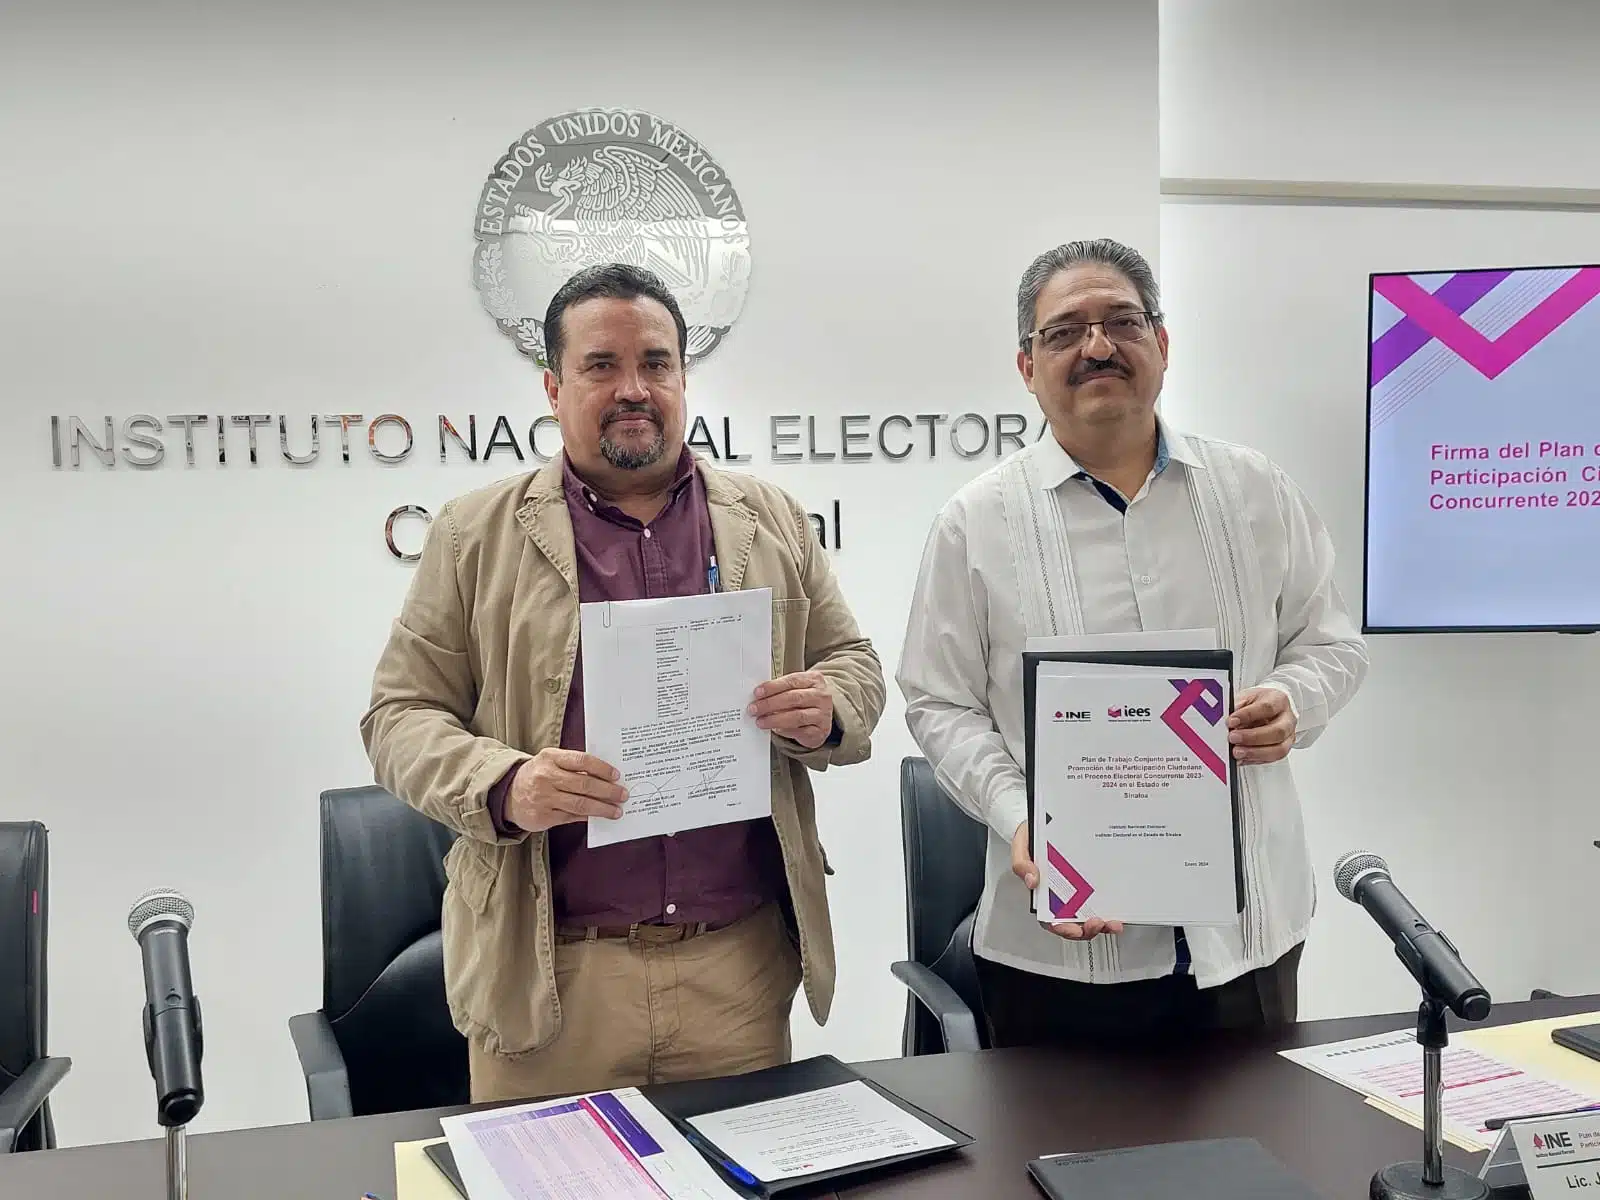 Arturo Fajardo Mejía y Jorge Luis Ruelas Miranda con un documento en la mano cada uno